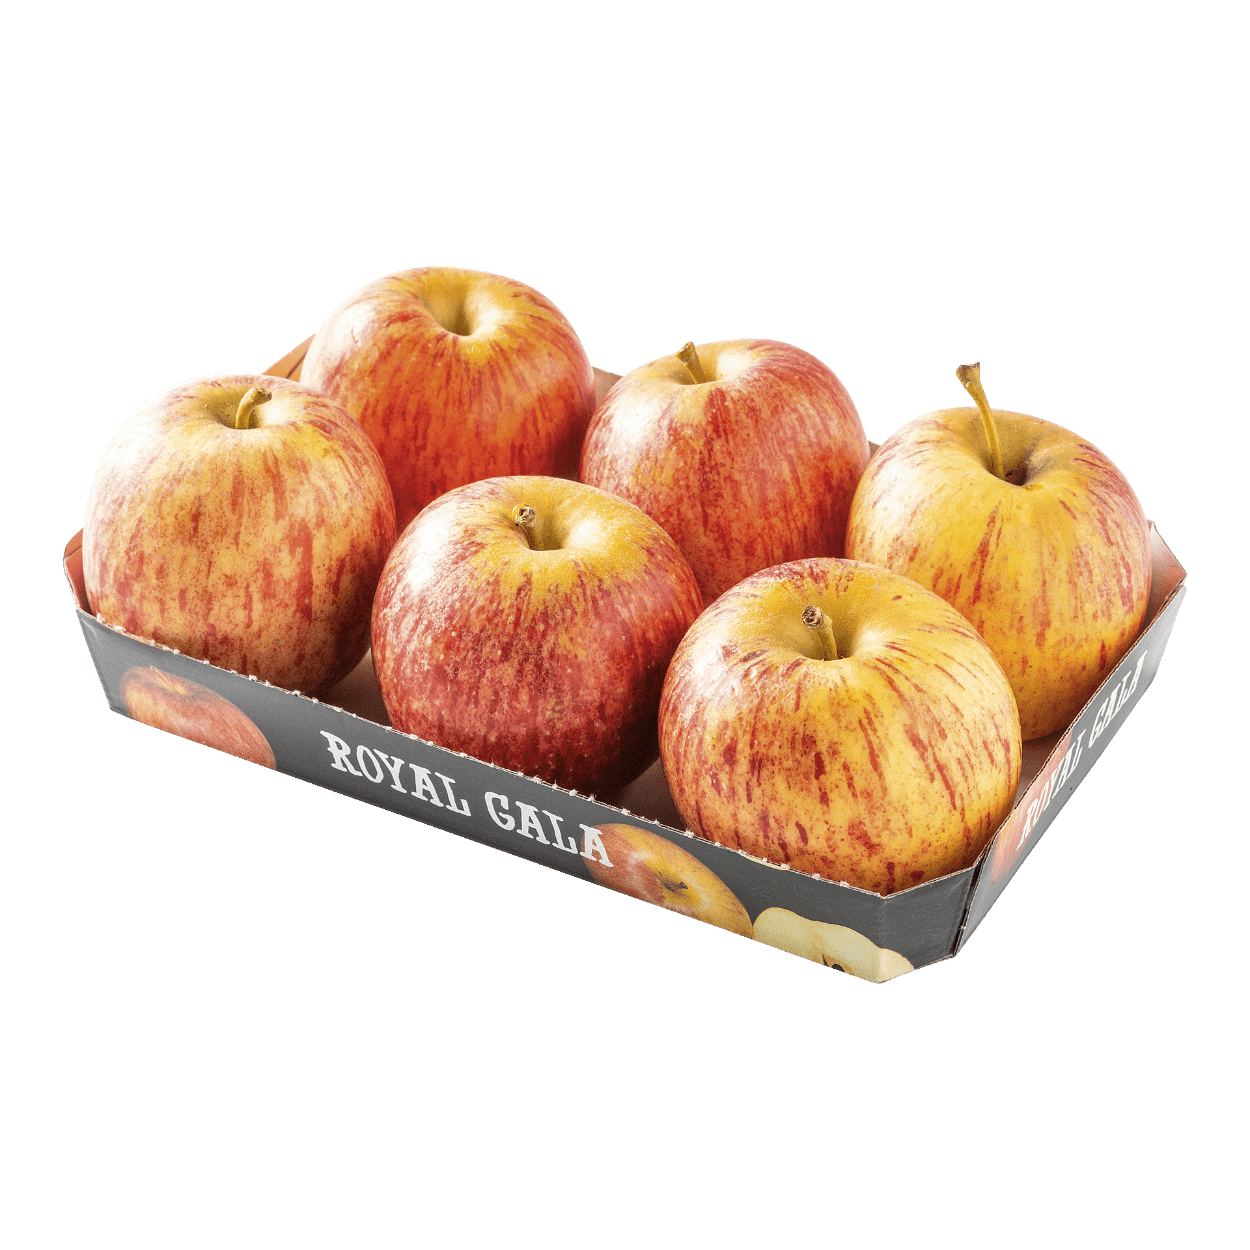 Royal Gala-appels aan lage prijs bij ALDI